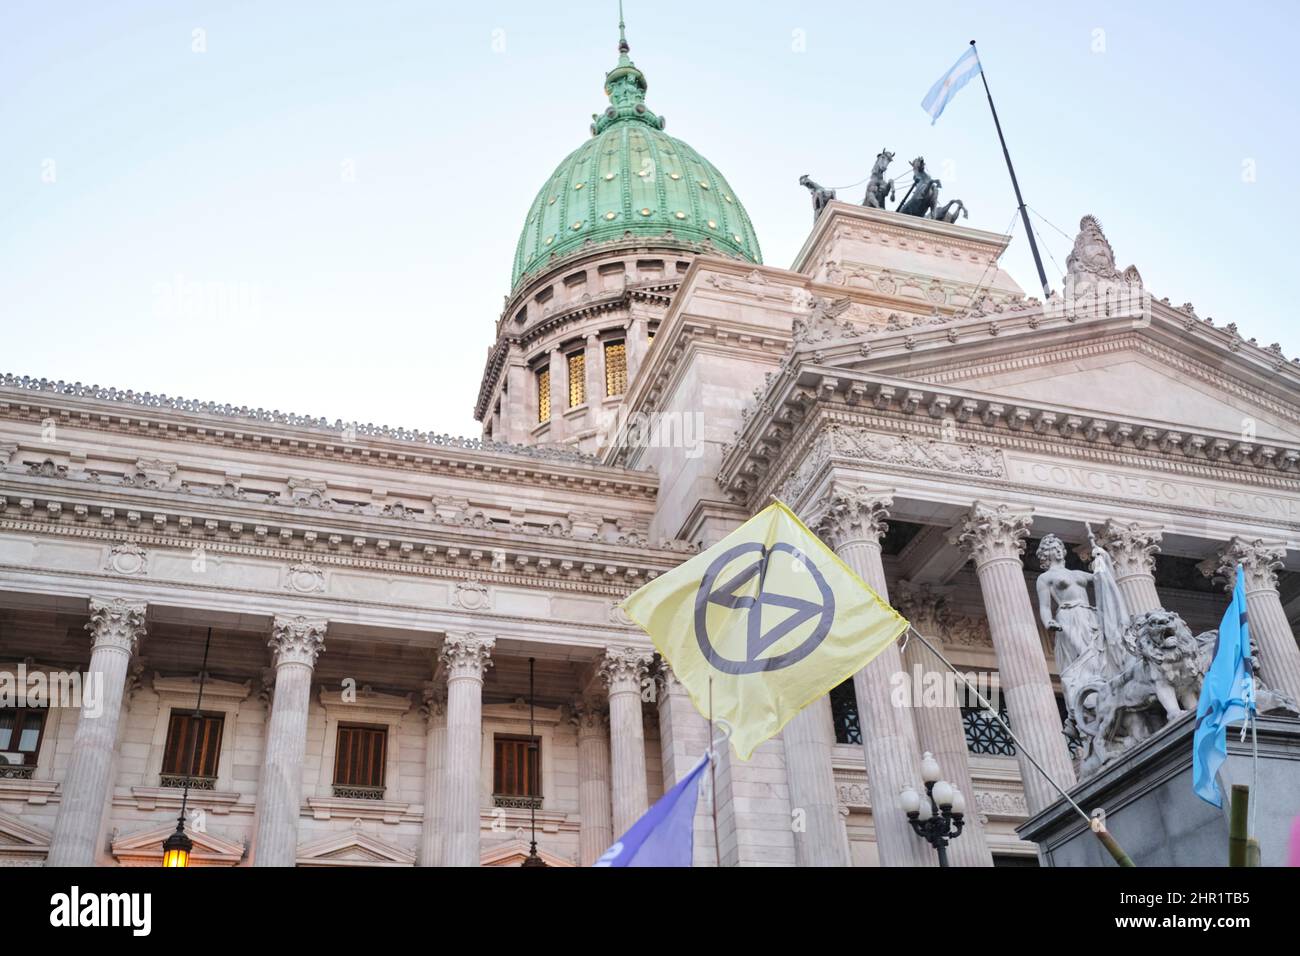 CABA, Buenos Aires, Argentina; 24 de septiembre de 2021: Bandera con el símbolo del movimiento ambientalista XR, Rebelión de Extinción, frente al Nacional Foto de stock